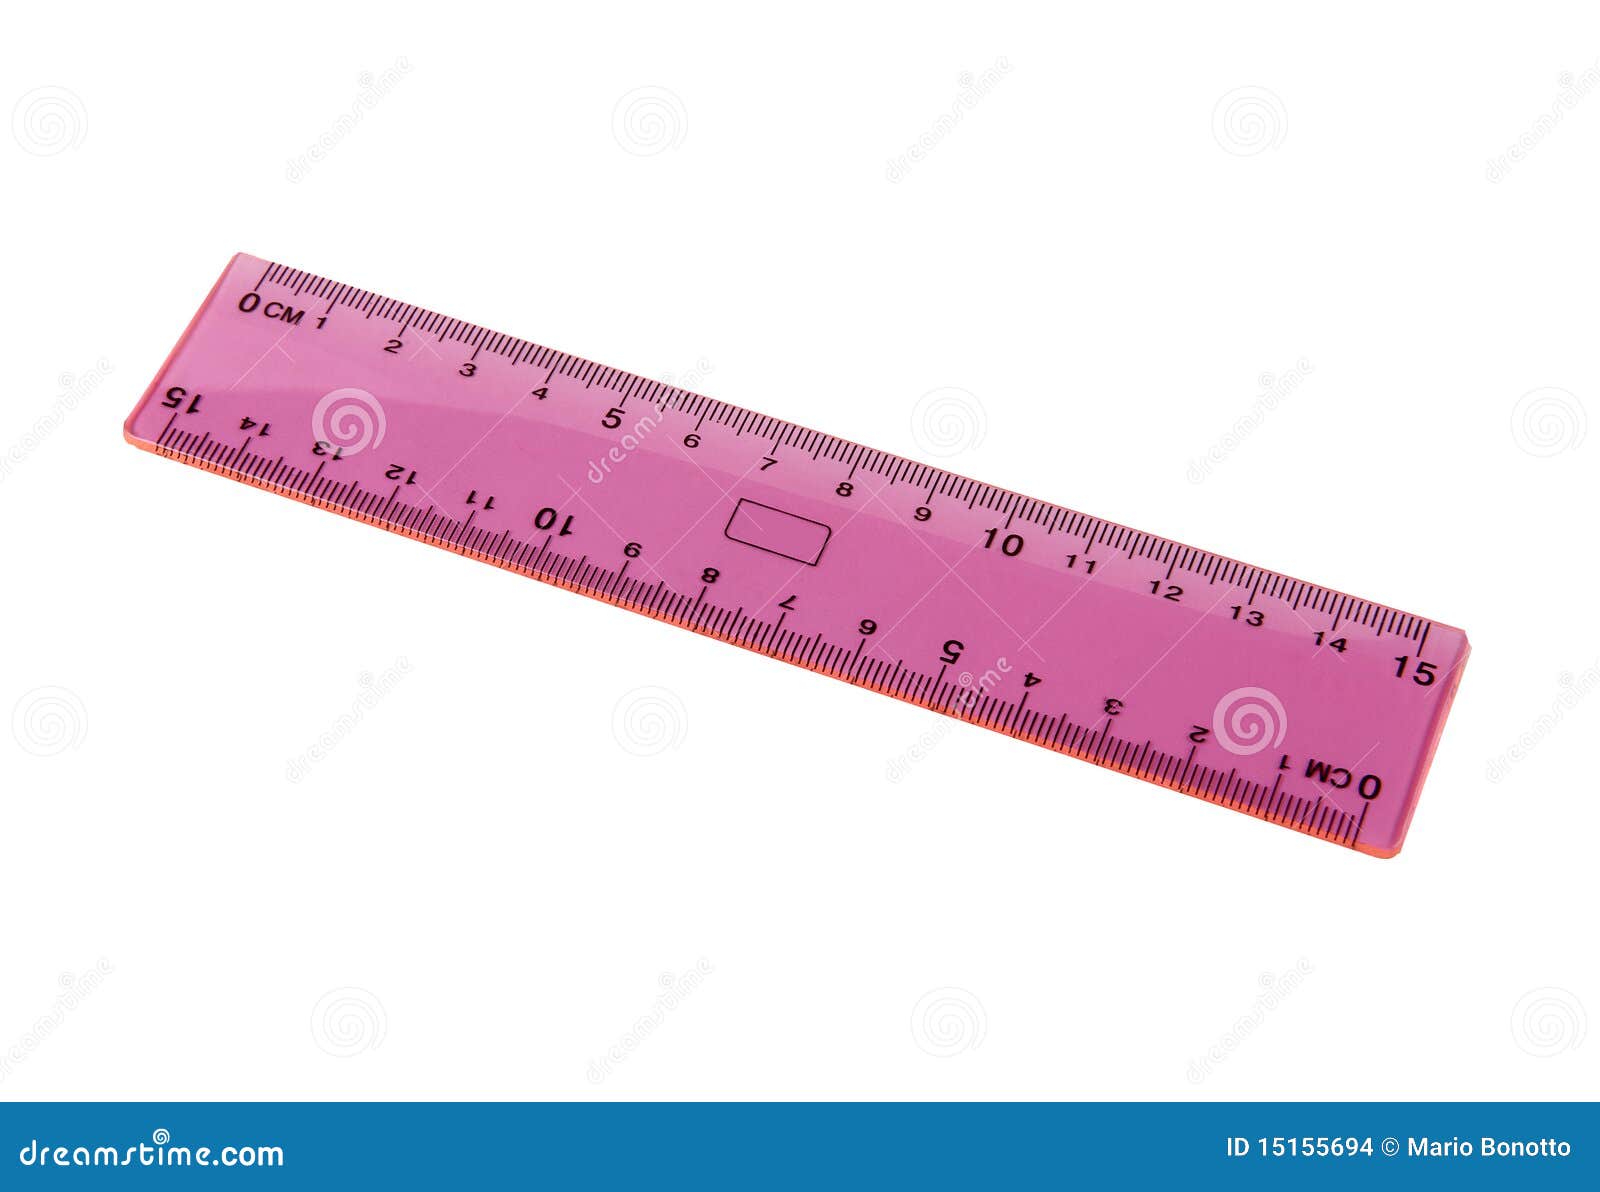 Millimeter ruler stock photo. Image of technical, ruler - 15155694